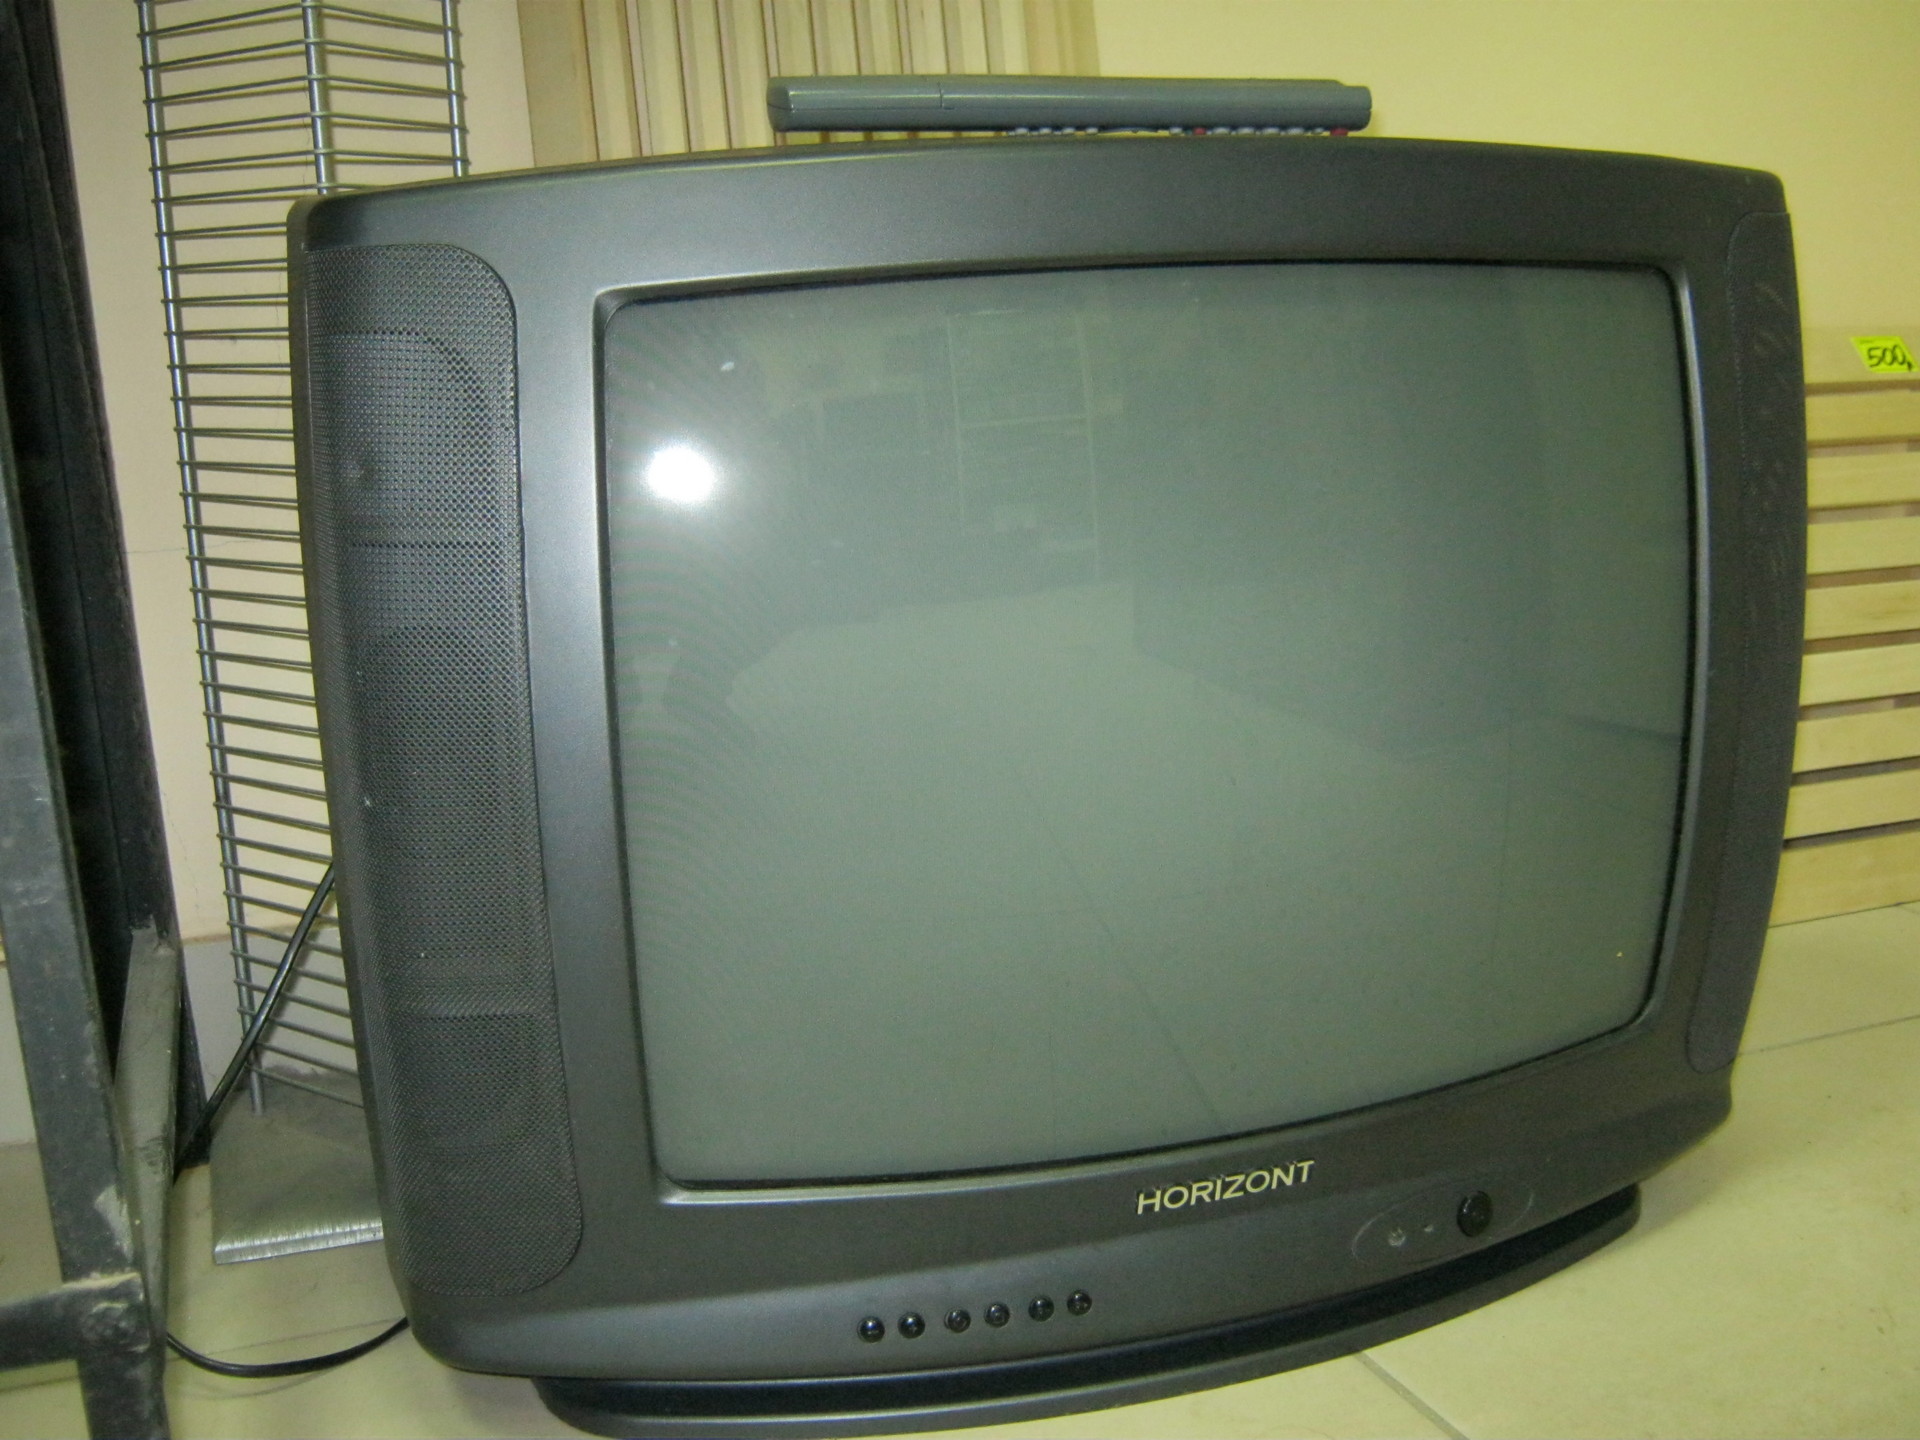 Телевизоры горизонт минск. Телевизор Горизонт 2000. Телевизор Горизонт 1995. Телевизор Горизонт 61тц305. Телевизор Горизонт 90.